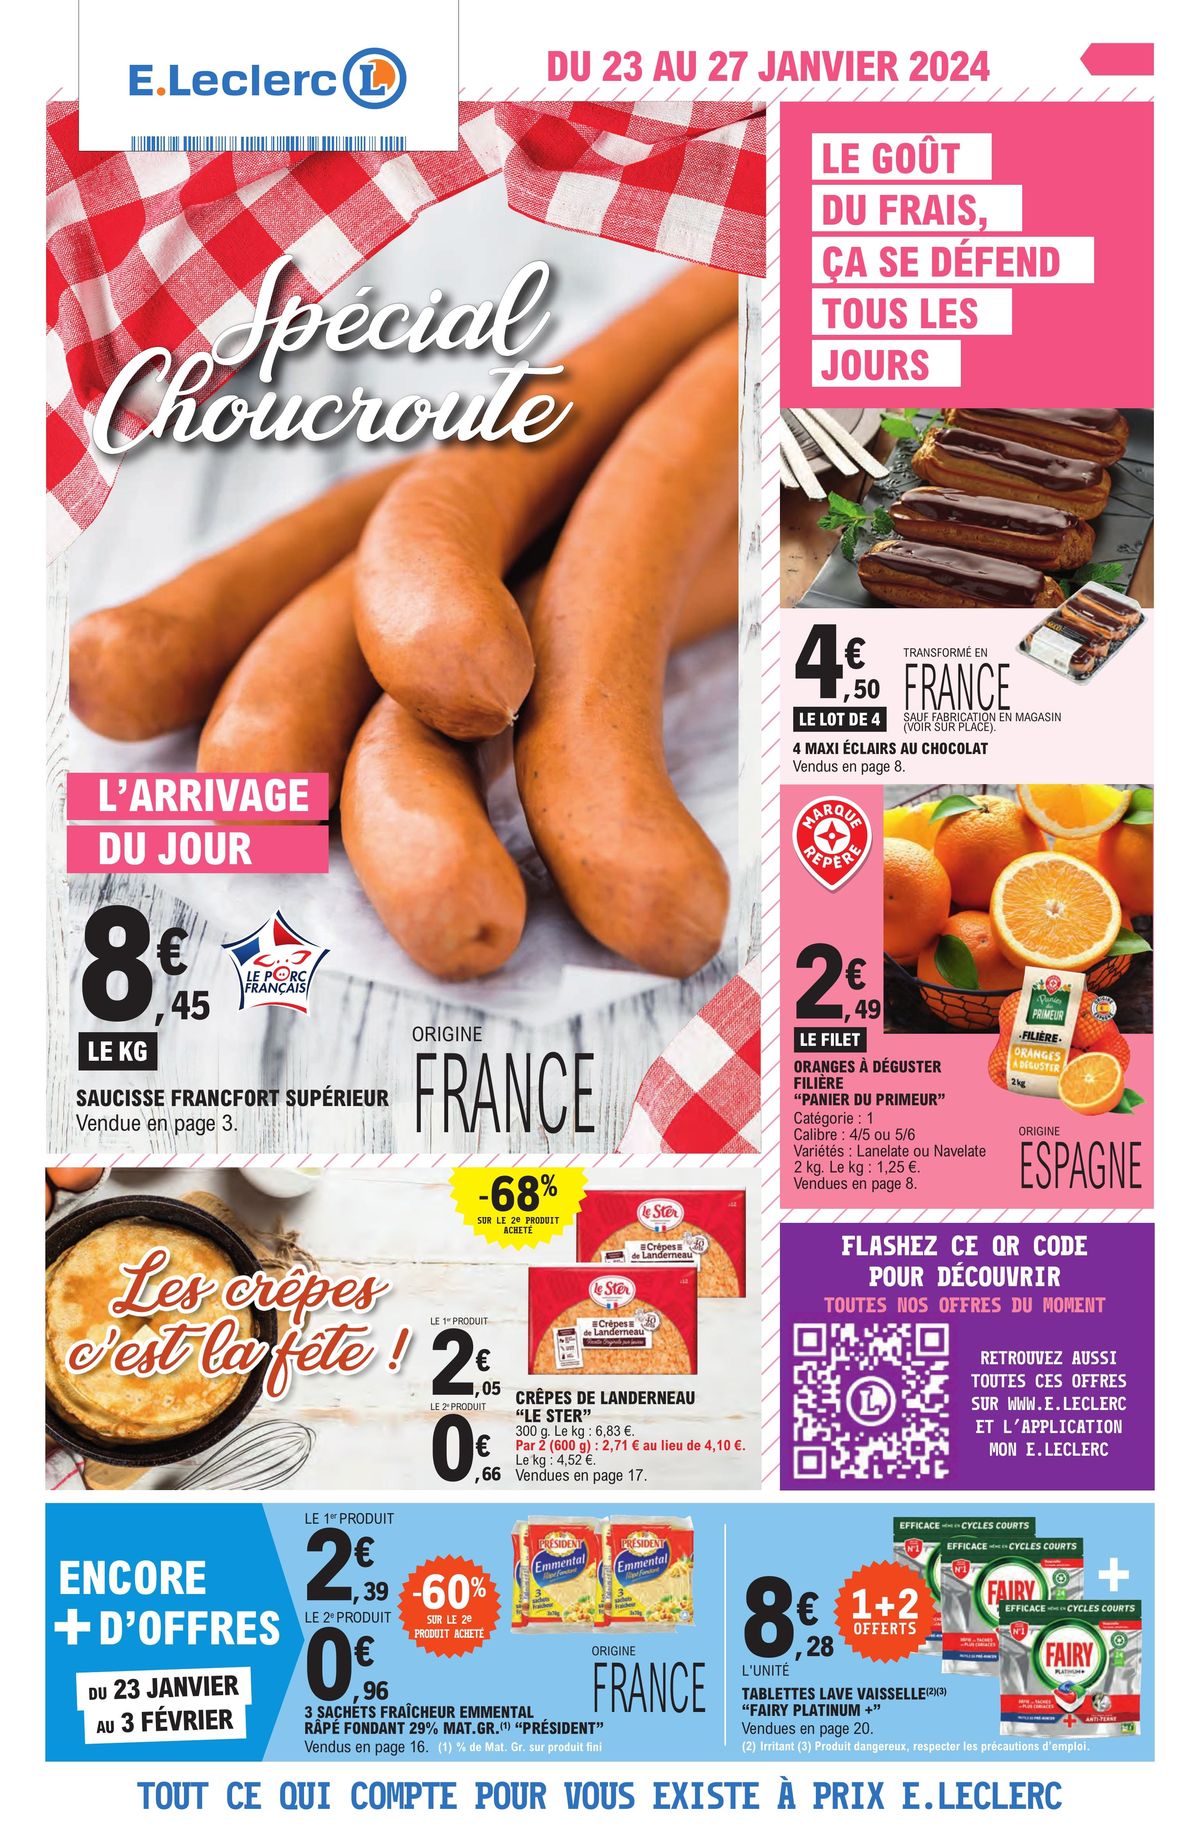 Catalogue Spécial Choucroute E.Leclerc, page 00001